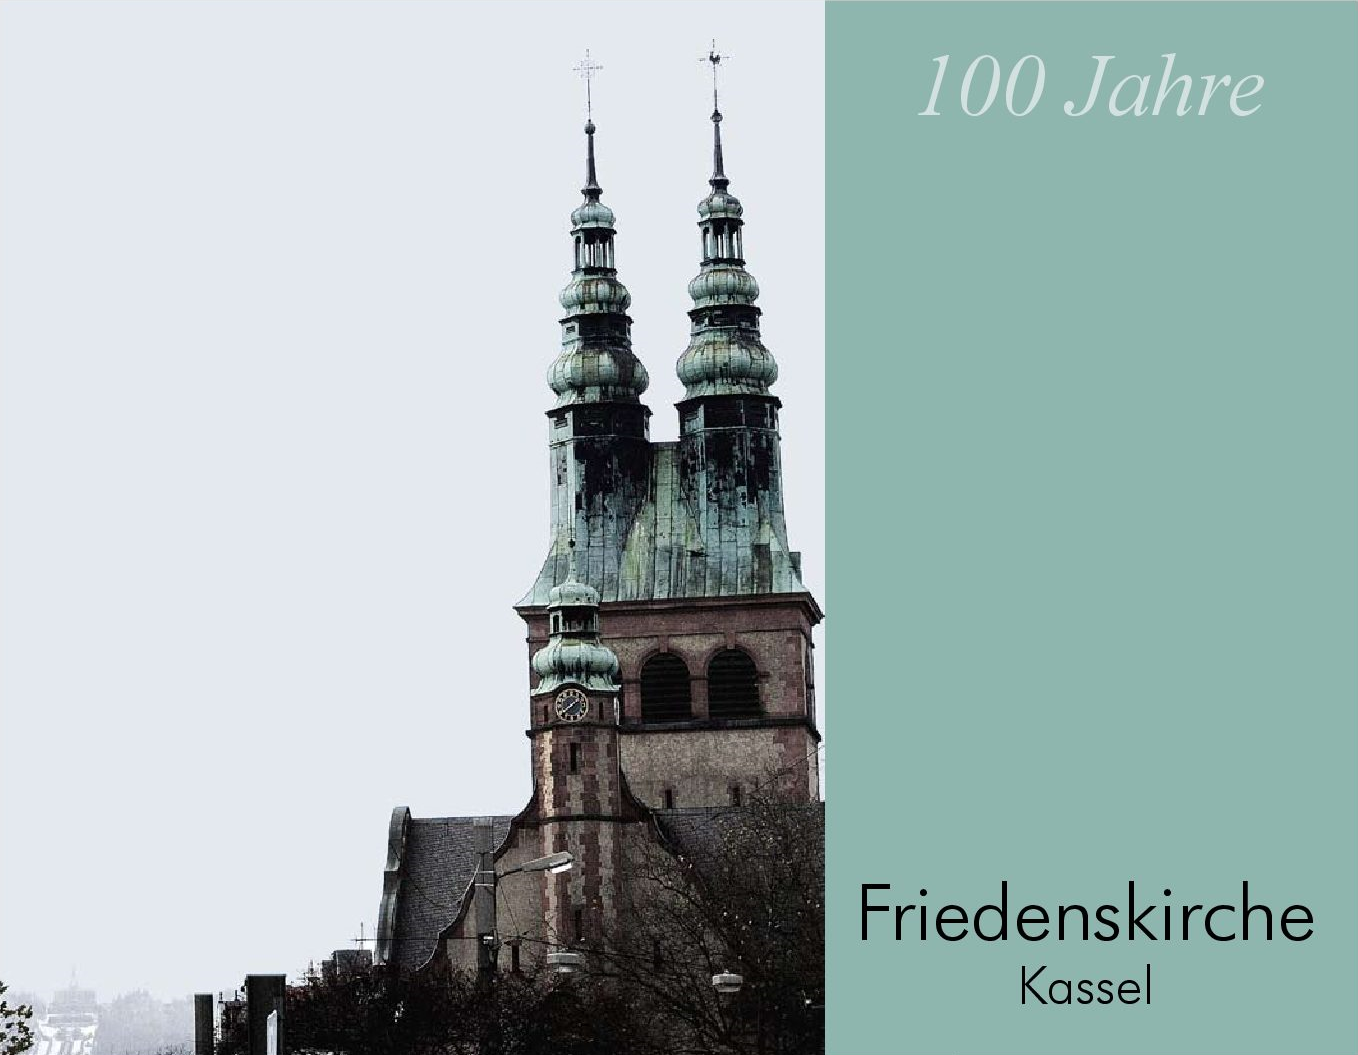 Titelbild der Festschrift '100 Jahre Friedenskirche Kassel'